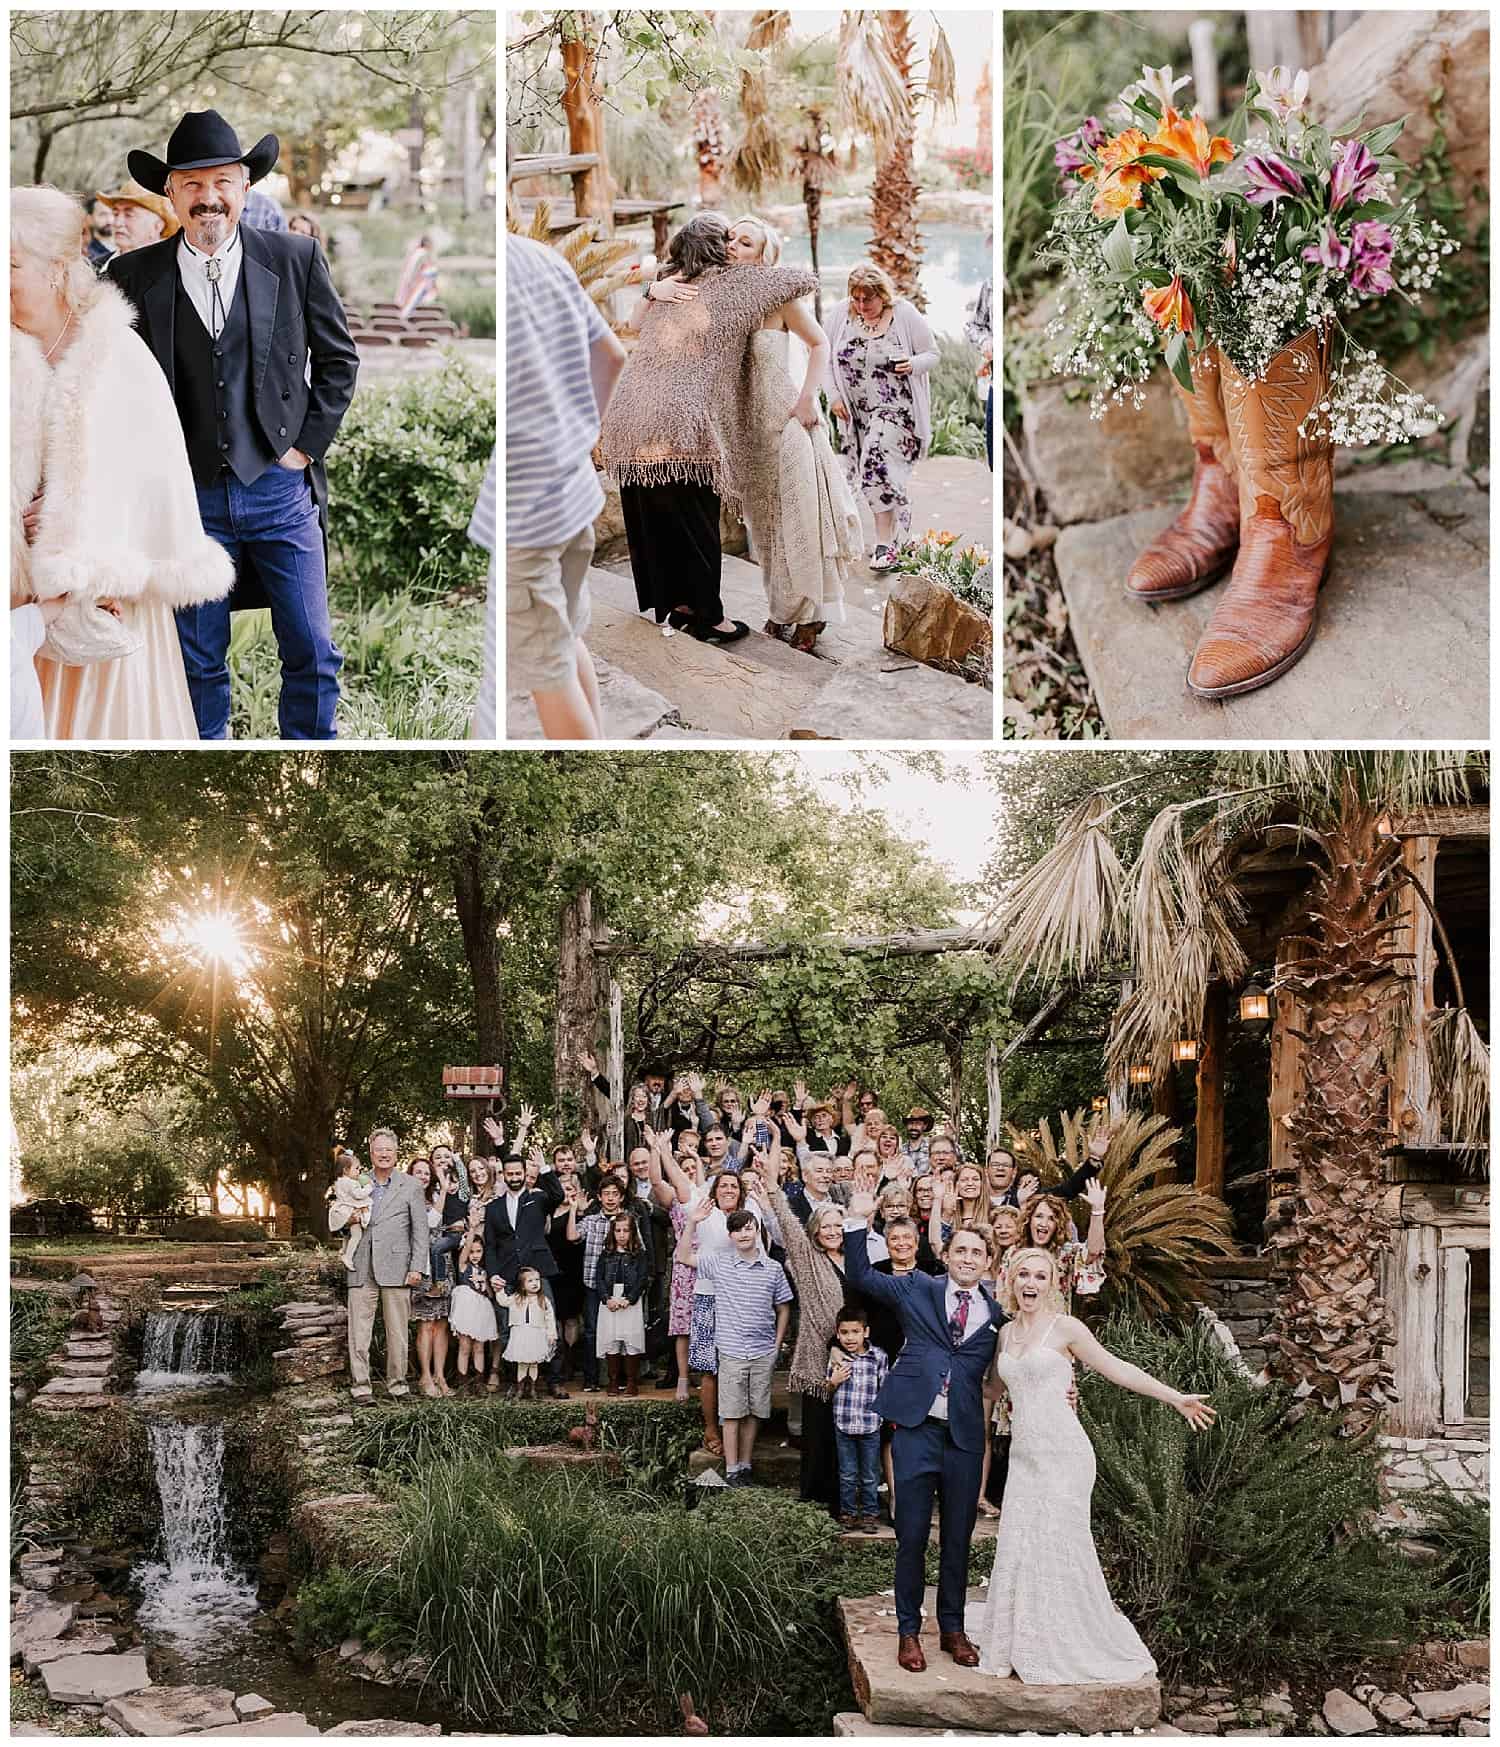 Photos at the Moon River Ranch wedding venue in Satin, Texas by Waco, TX wedding photographer Luma Weddings